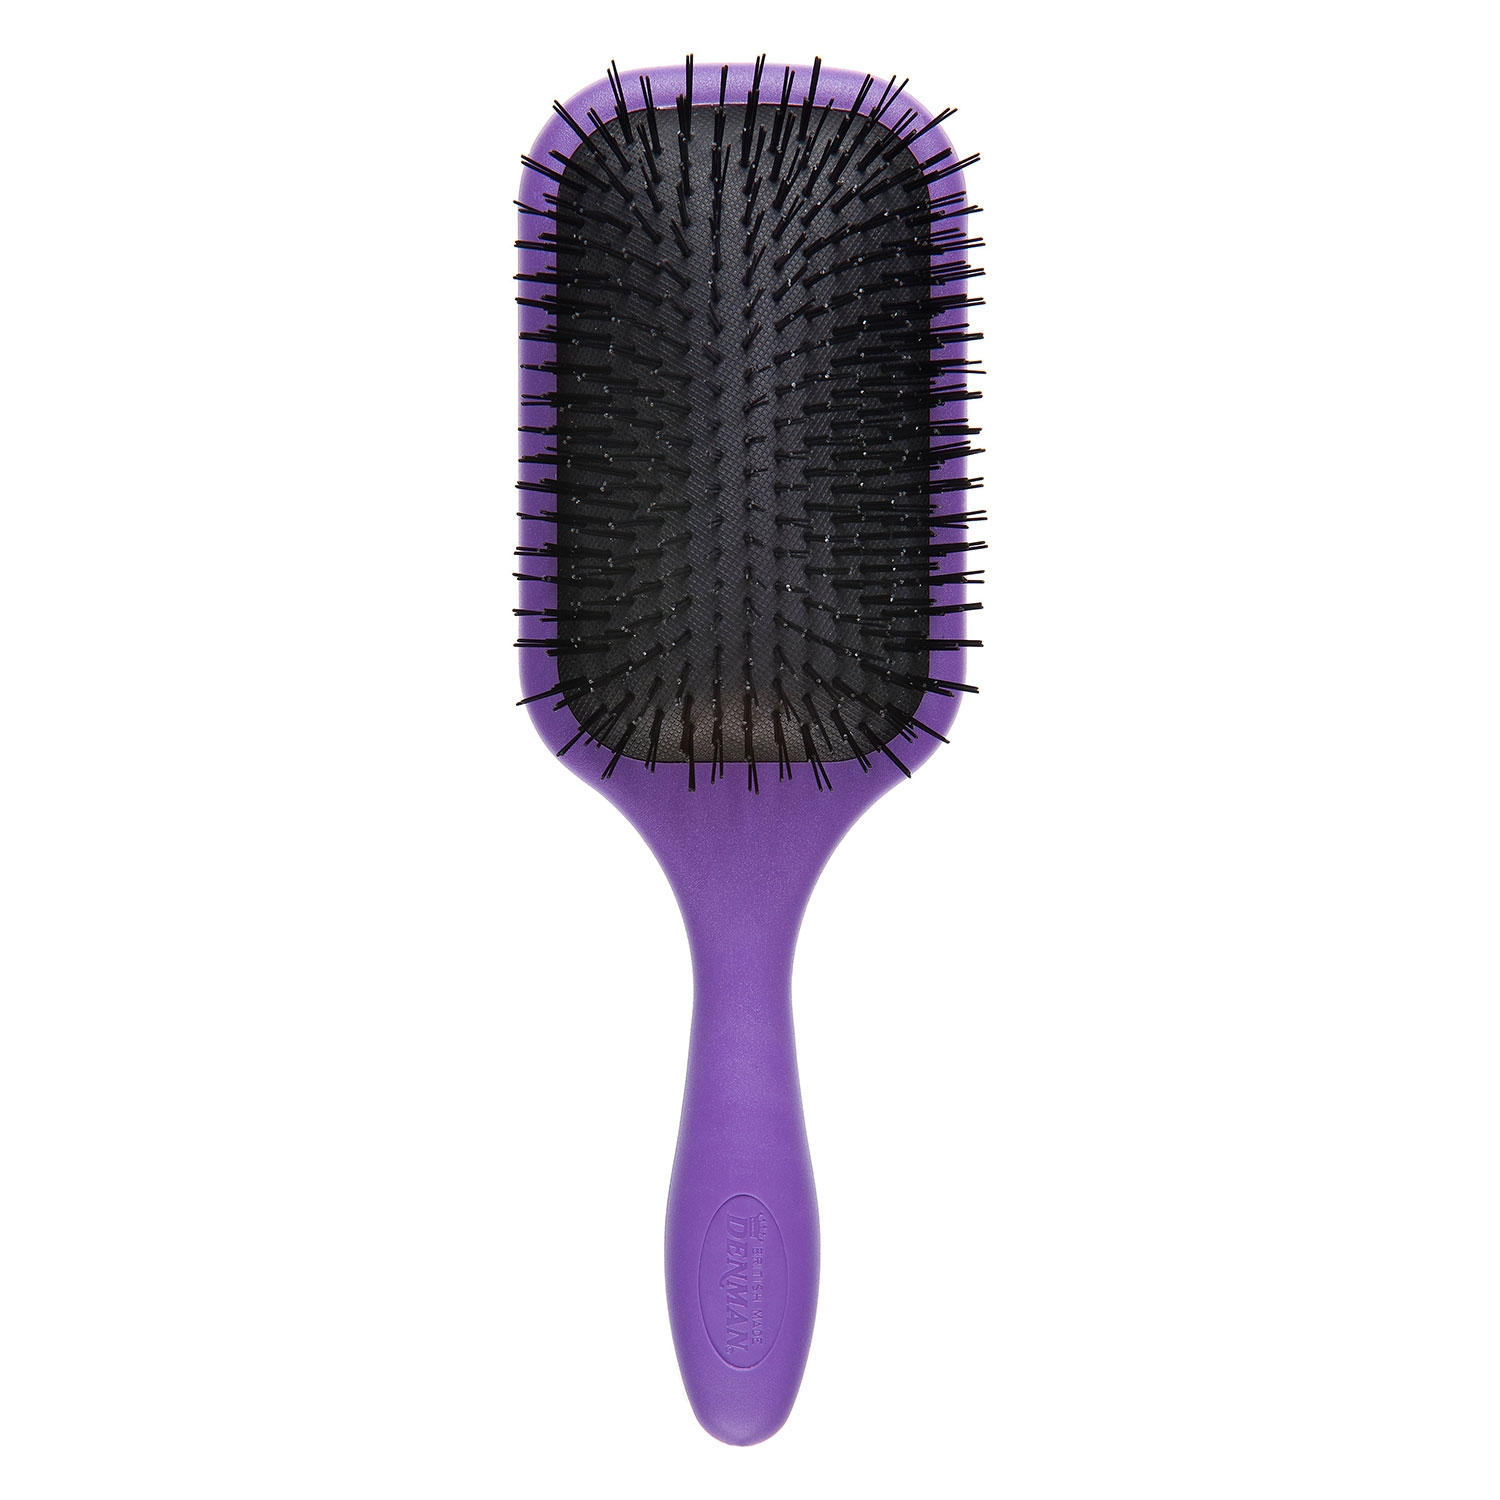 Produktbild von Tangle Tamer - Detangling-Brush purple